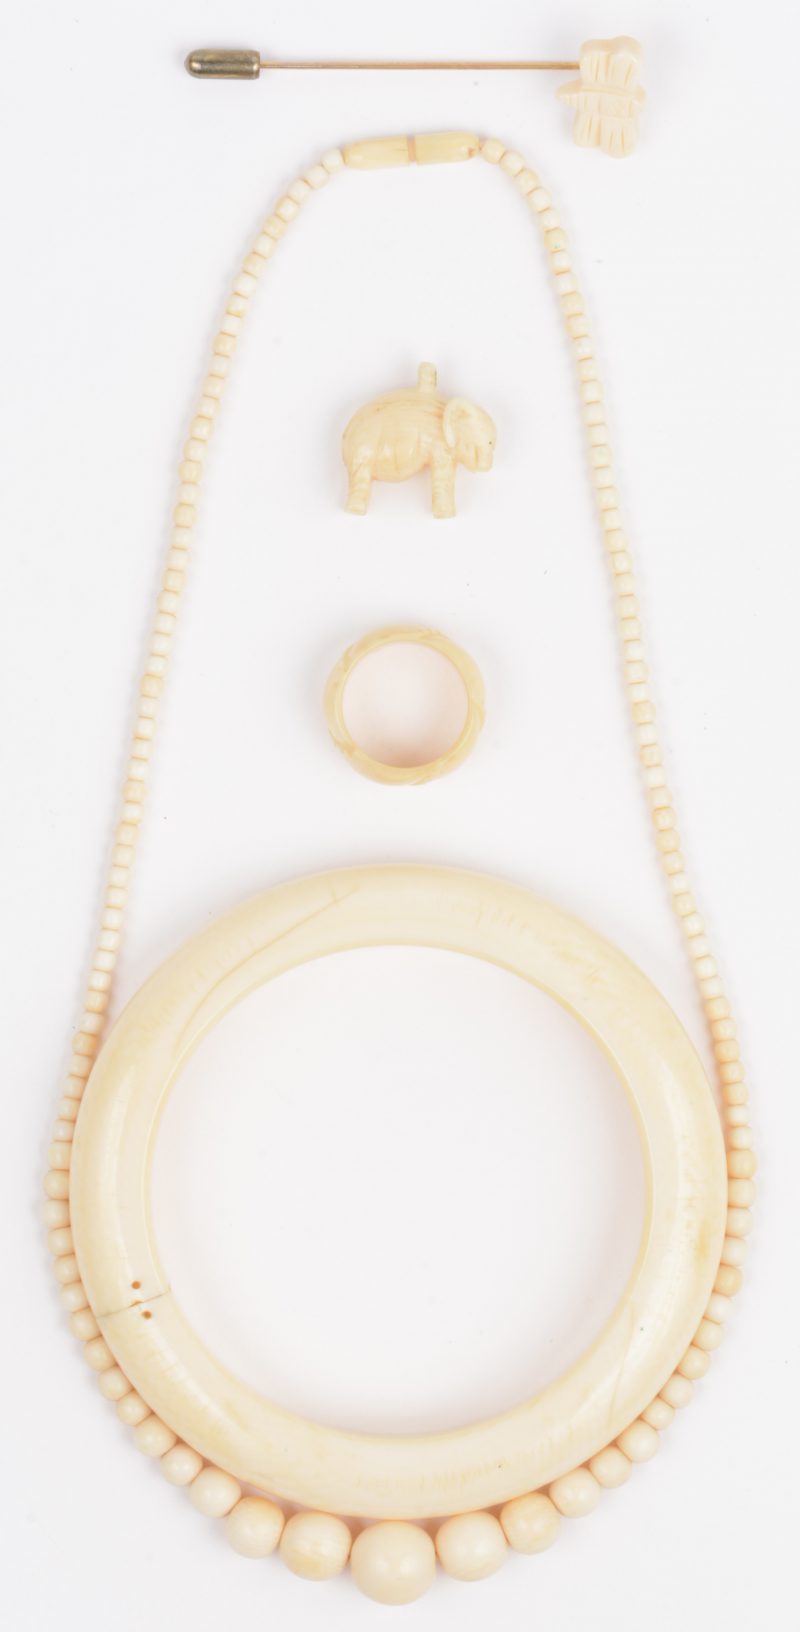 Een lot ivoren juwelen waaronder een speld, een halssnoer, een armband, twee hangertjes en een ring.